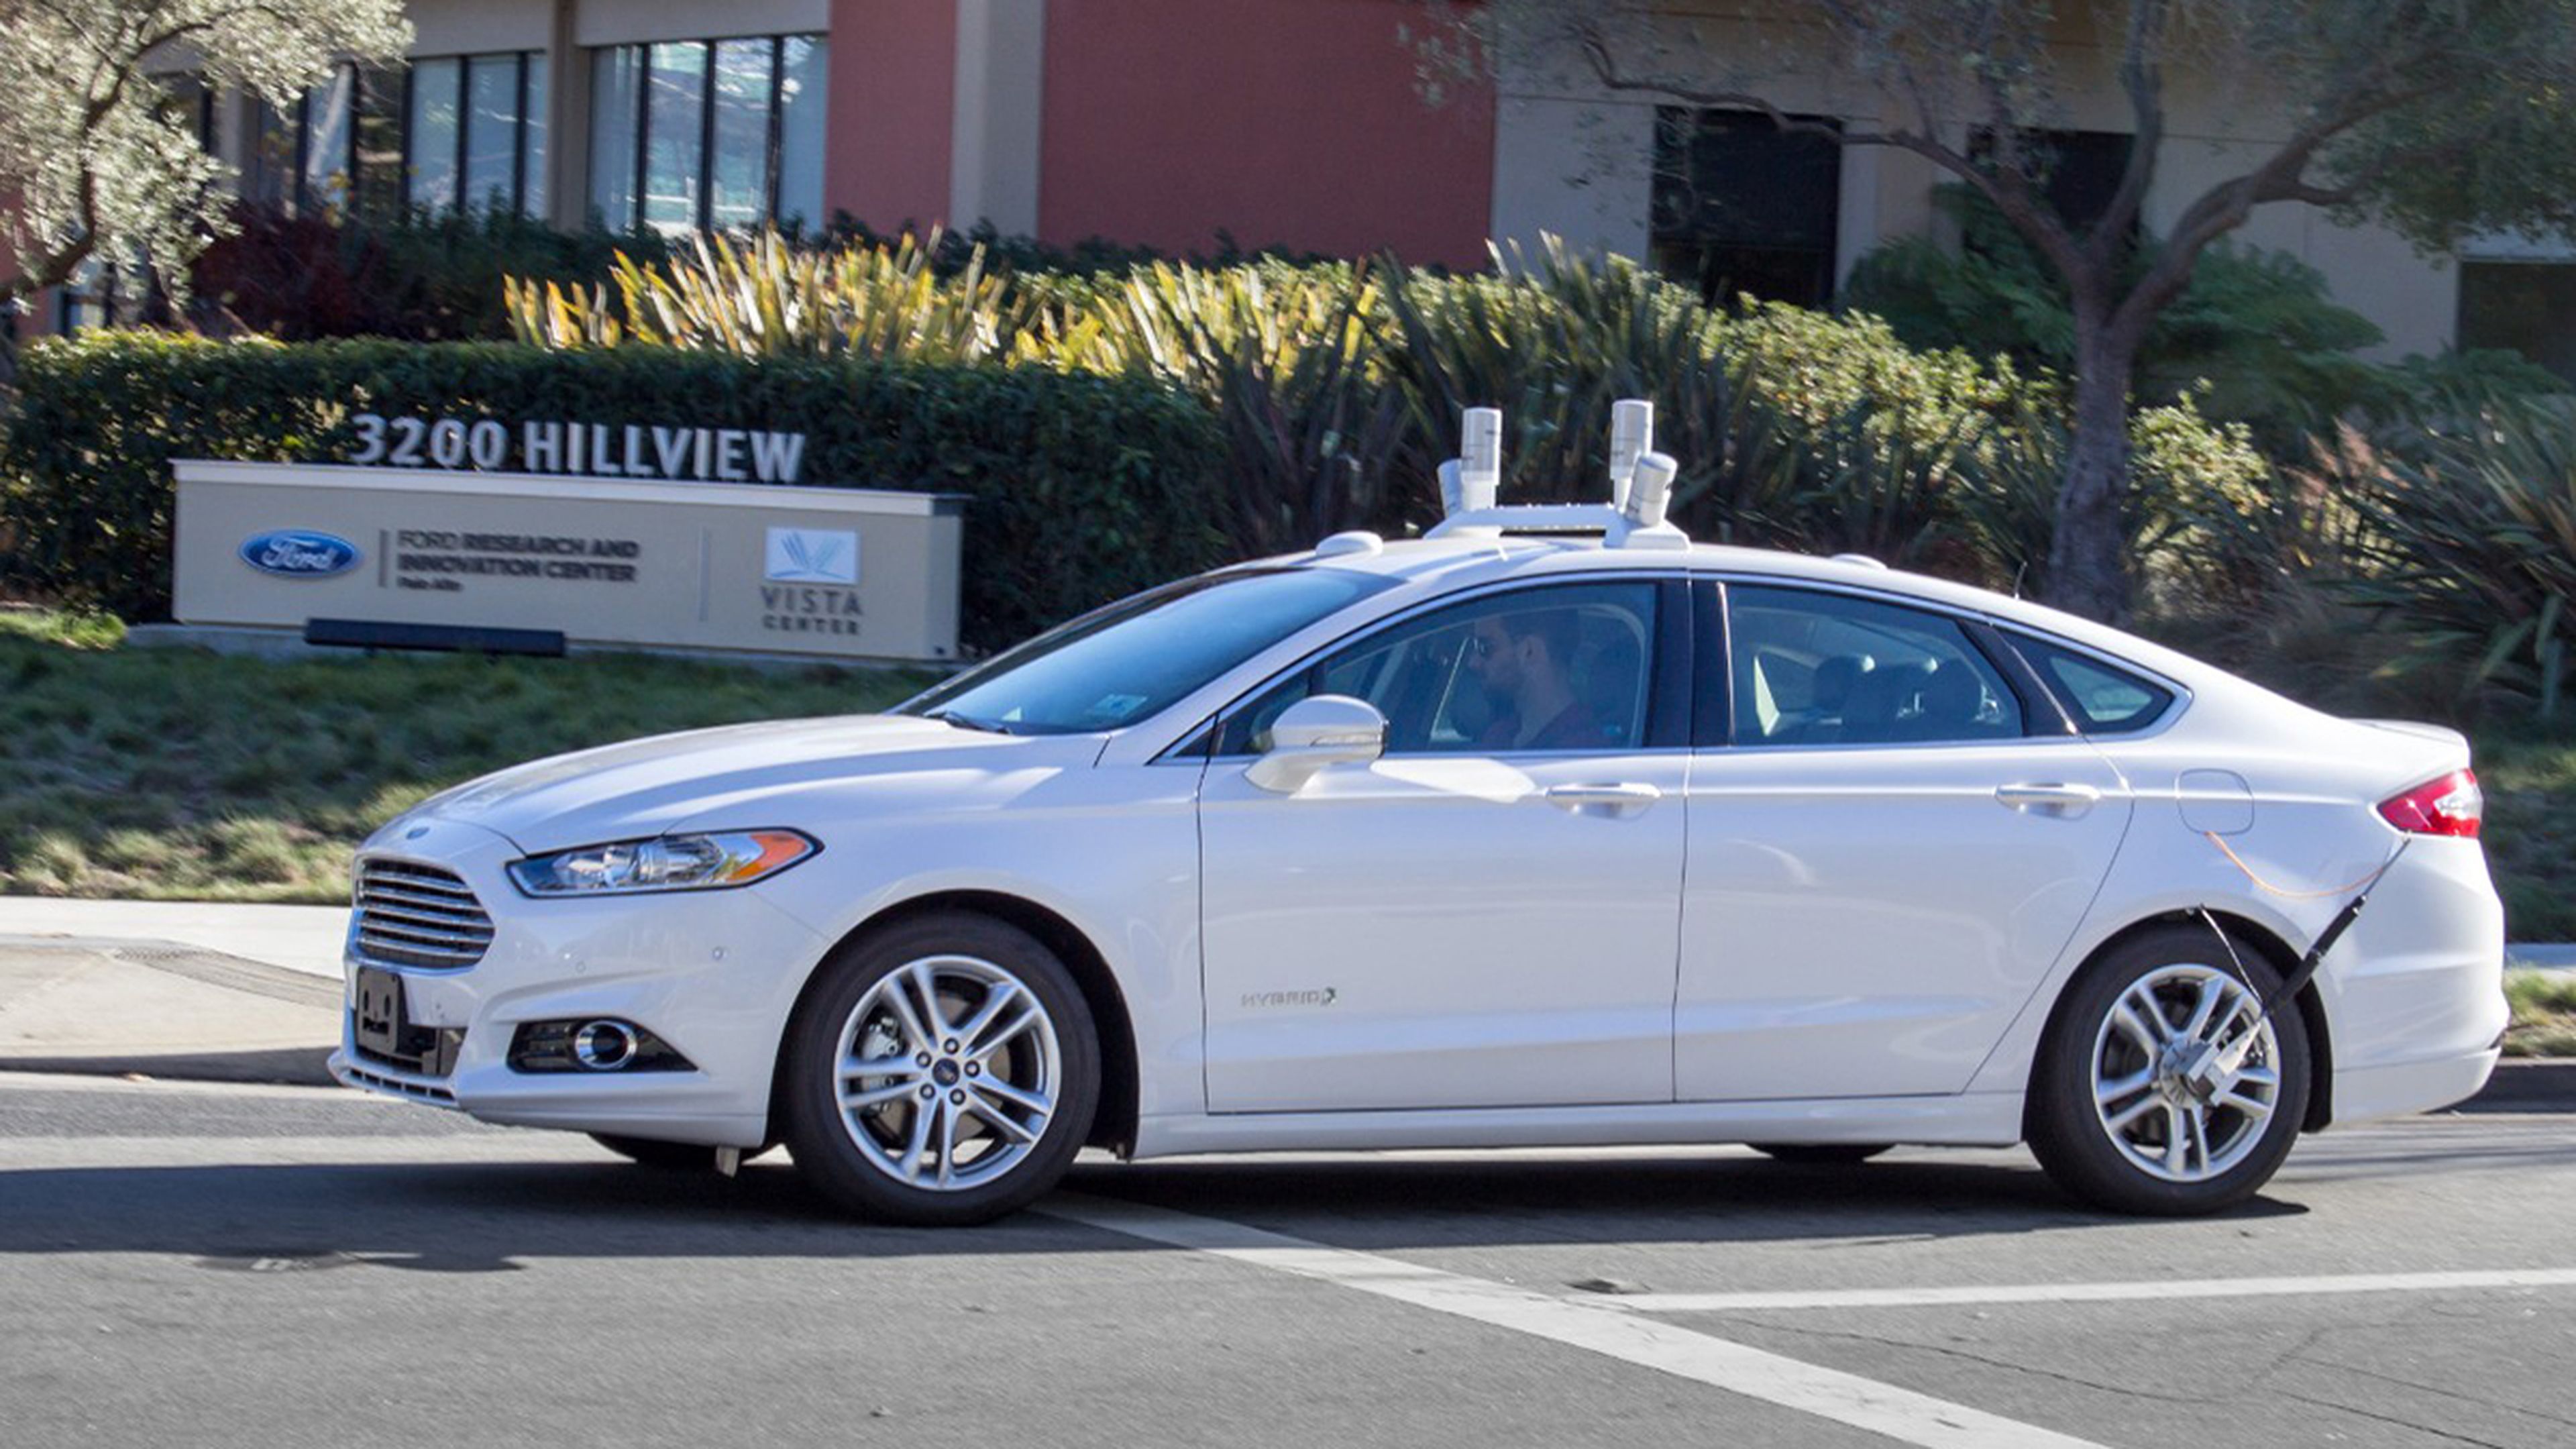 Ford inicia las pruebas con coches autónomos en California